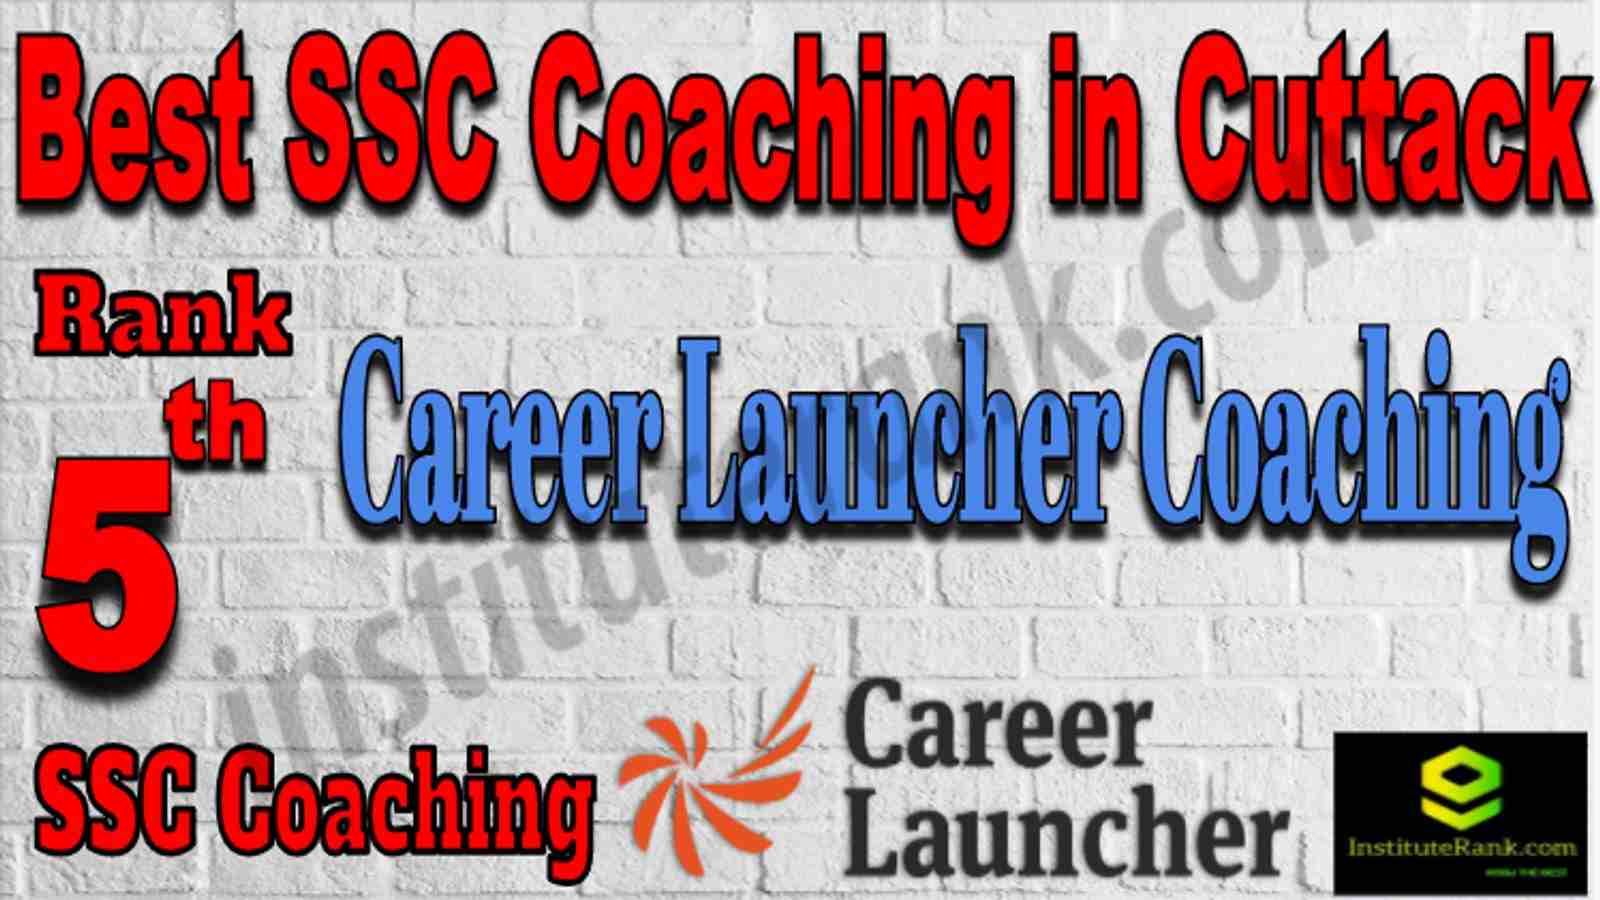 Rank 5 Best SSC Coaching in Cuttack